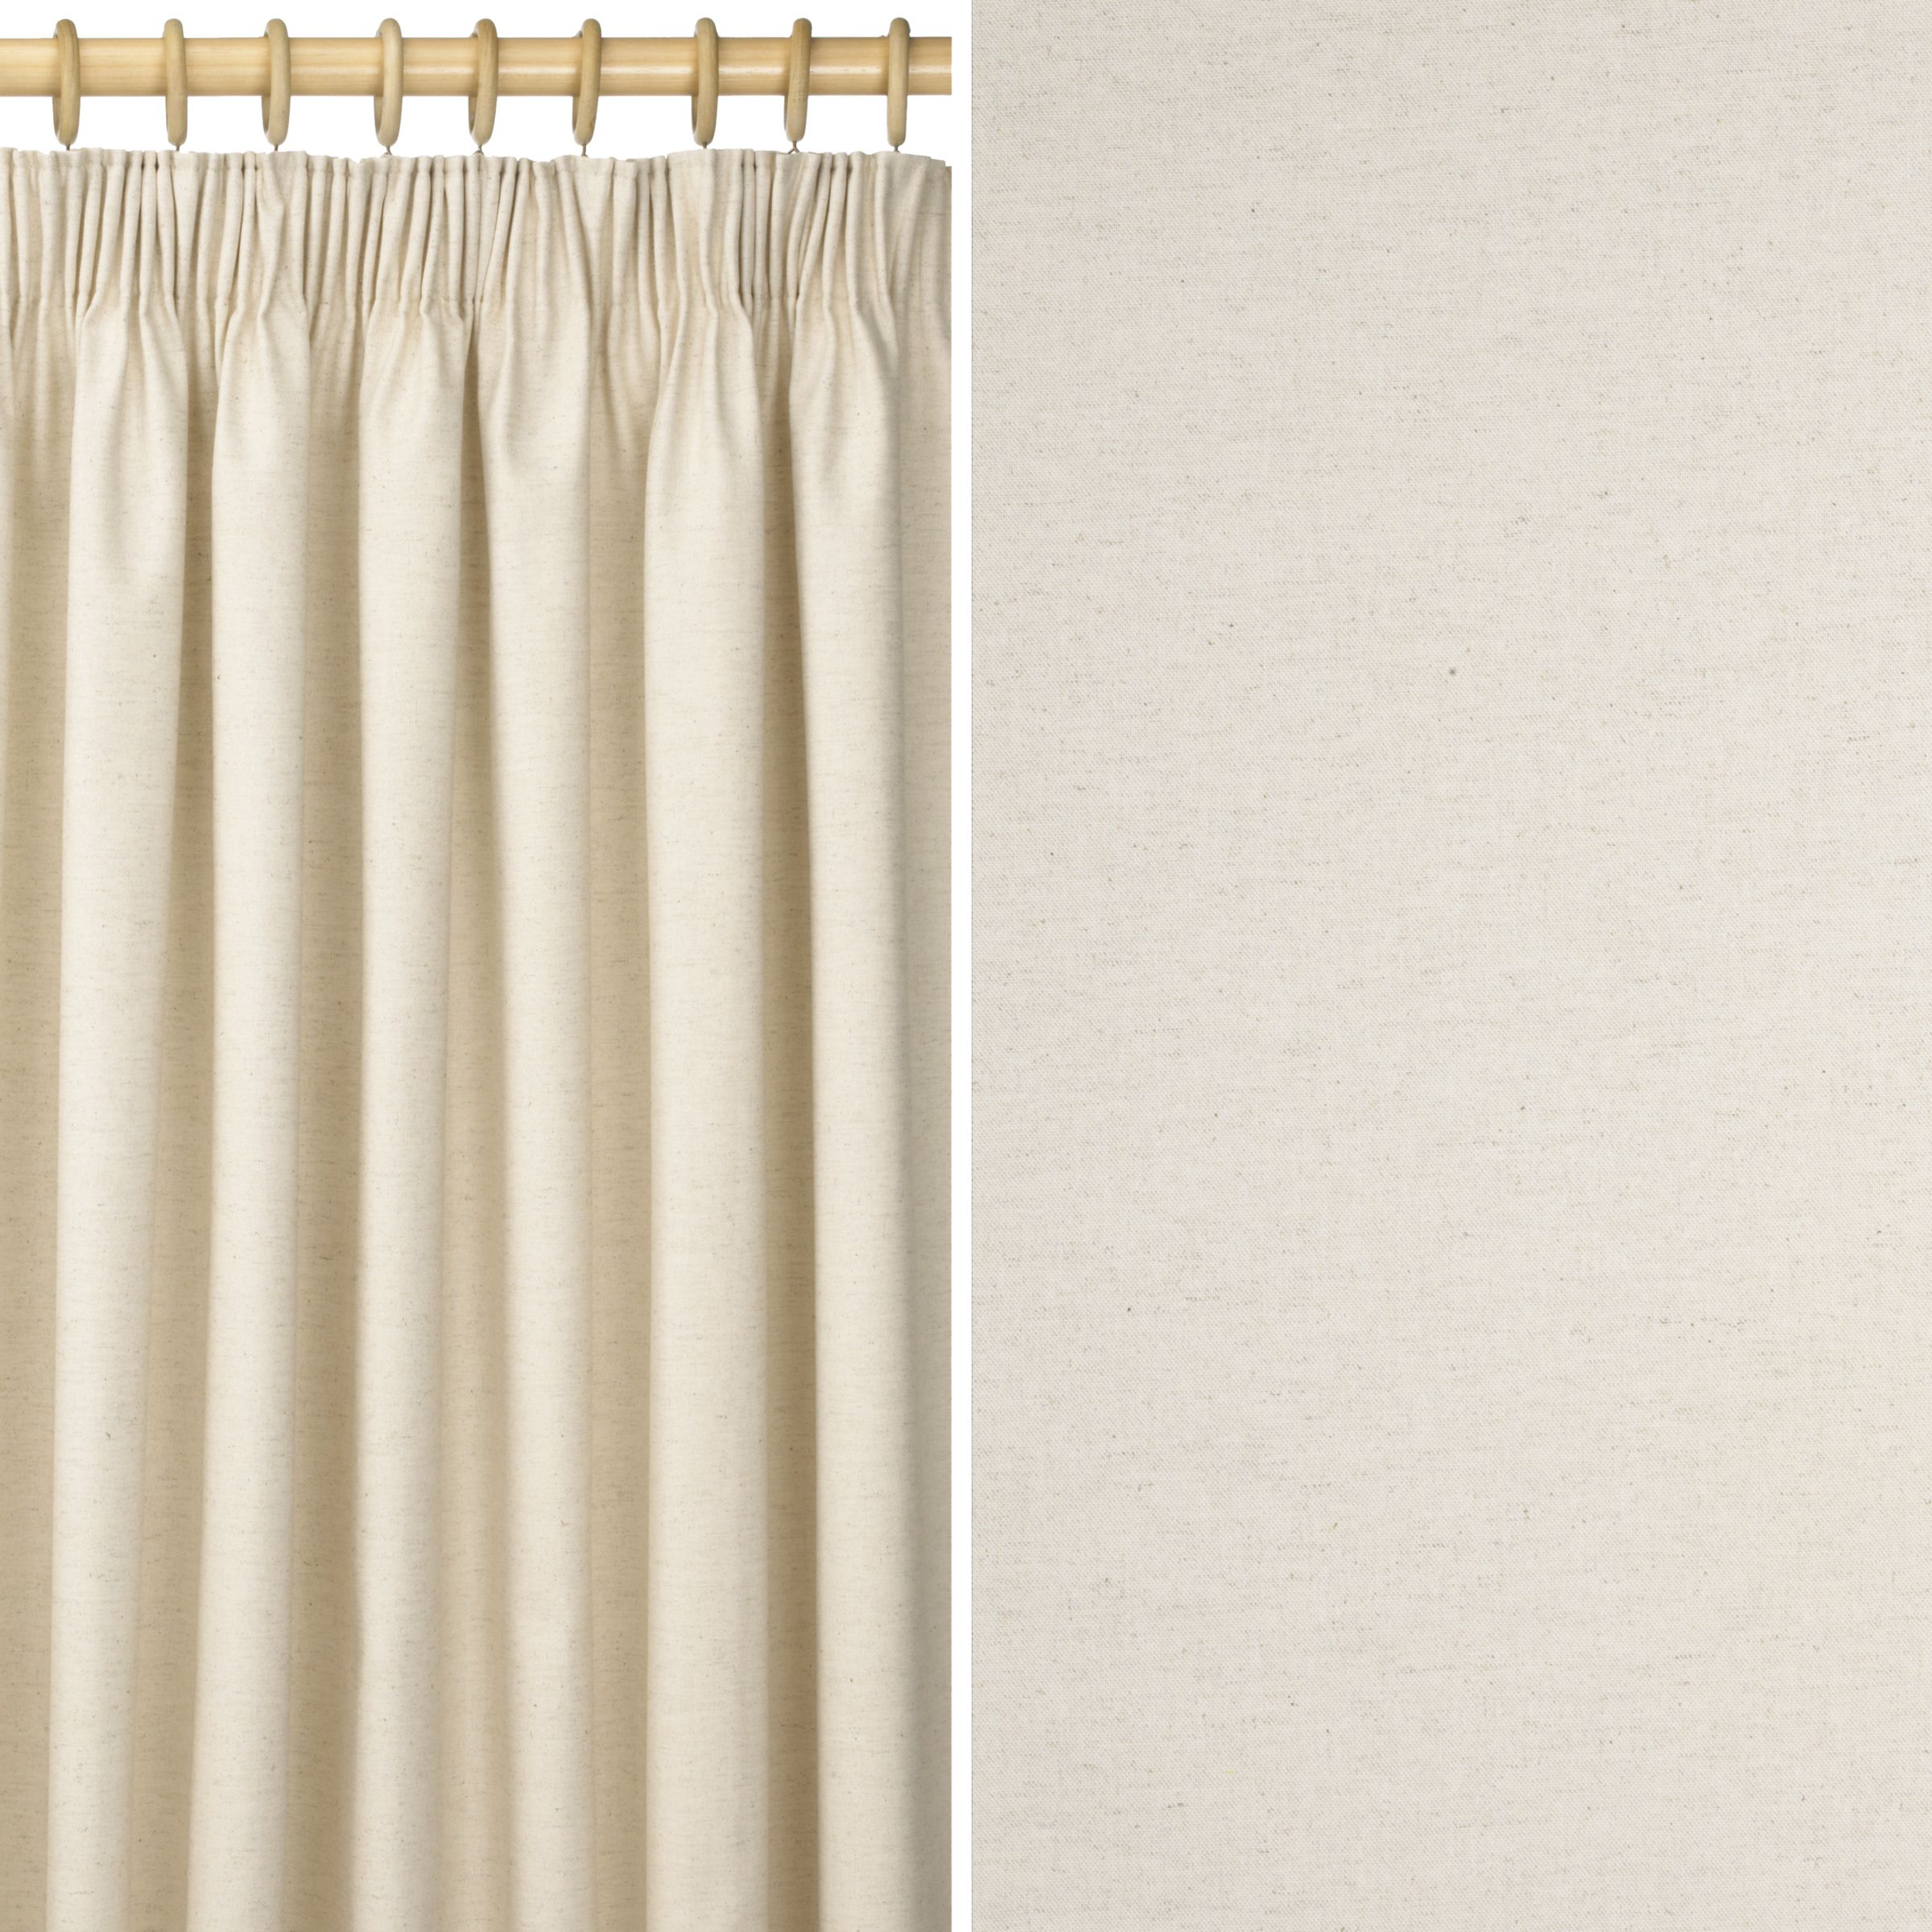 Eskdale Curtains, Natural, W163 x Drop 228cm